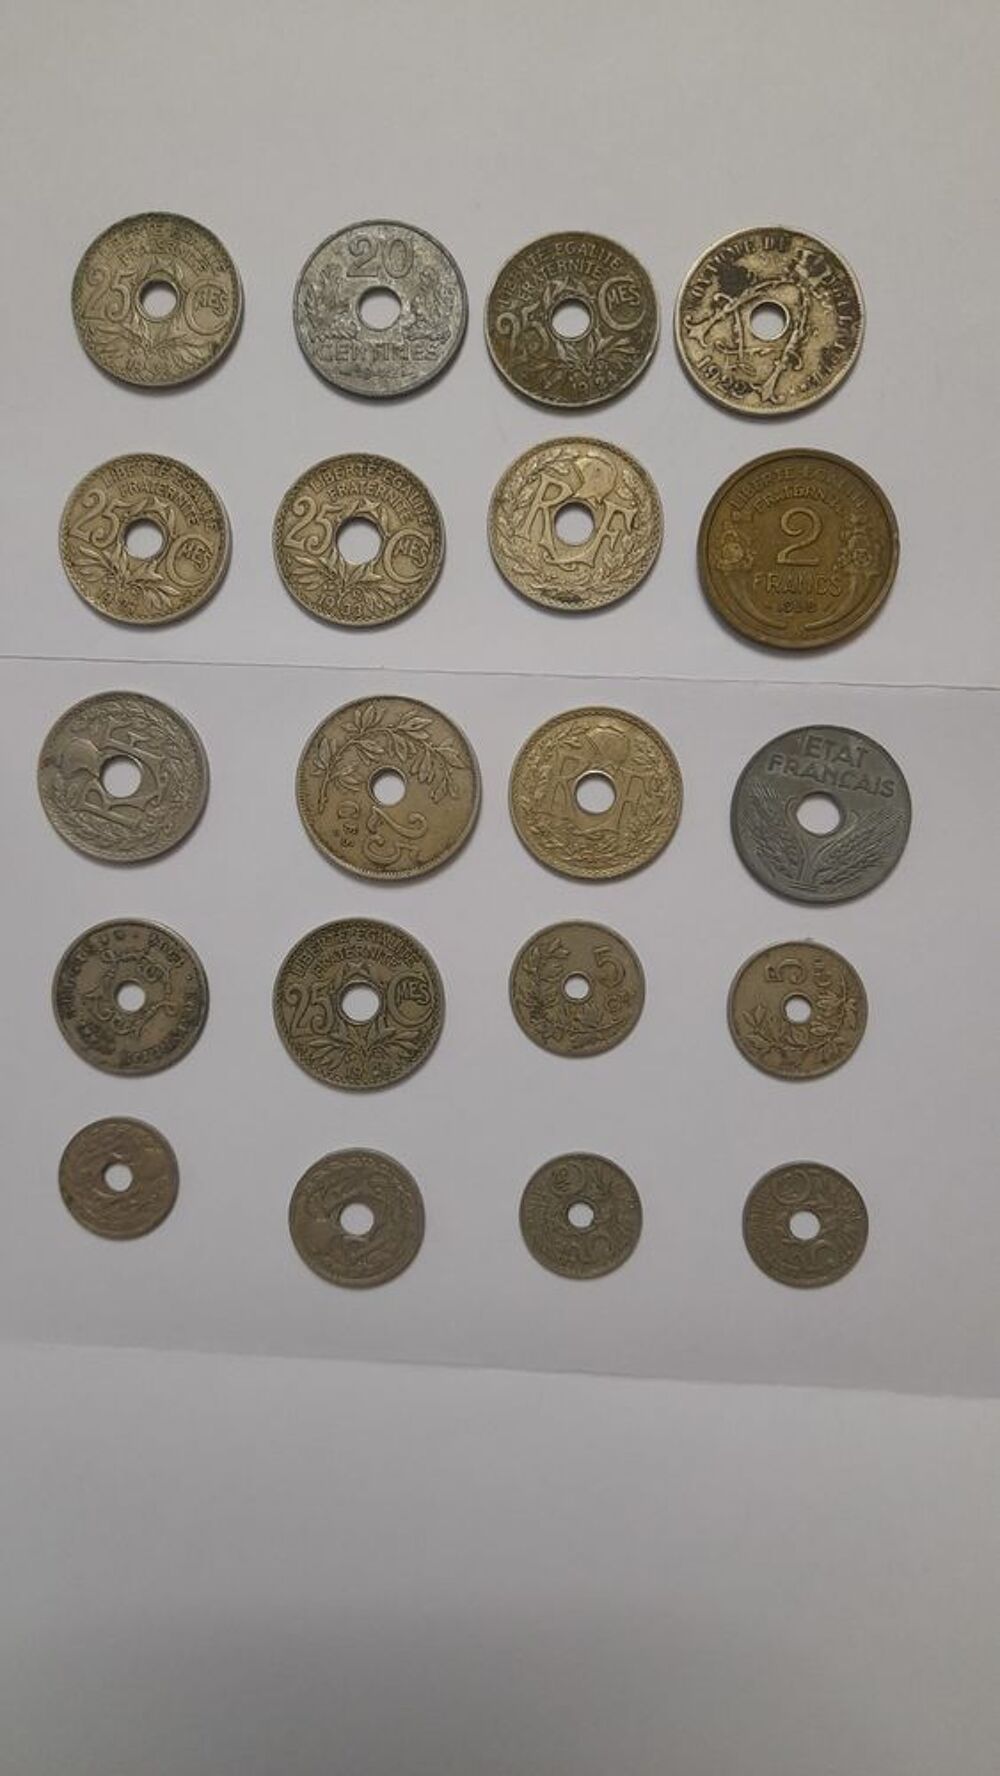 divers pieces de monnaie troue du debut 1900 